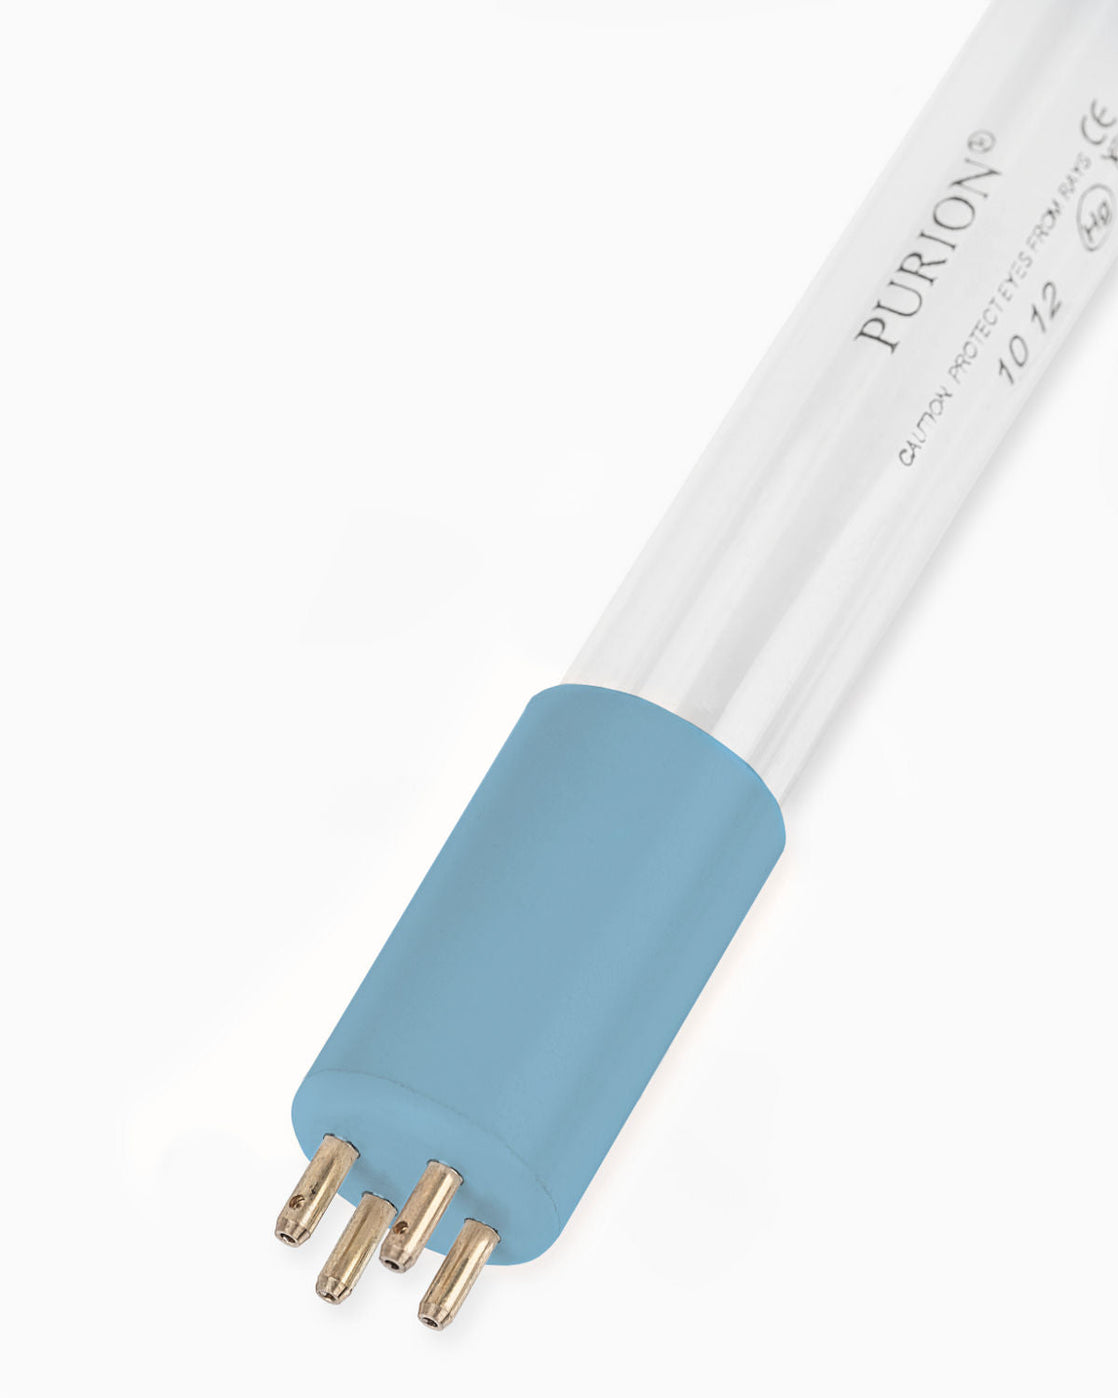 Eine blaue PURION IBC DN150 36W OTC SPL BS-Röhre auf weißem Hintergrund beleuchtet Wasserentnahme und Trinkwasserqualität. [Markenname: UV Concept GmbH]